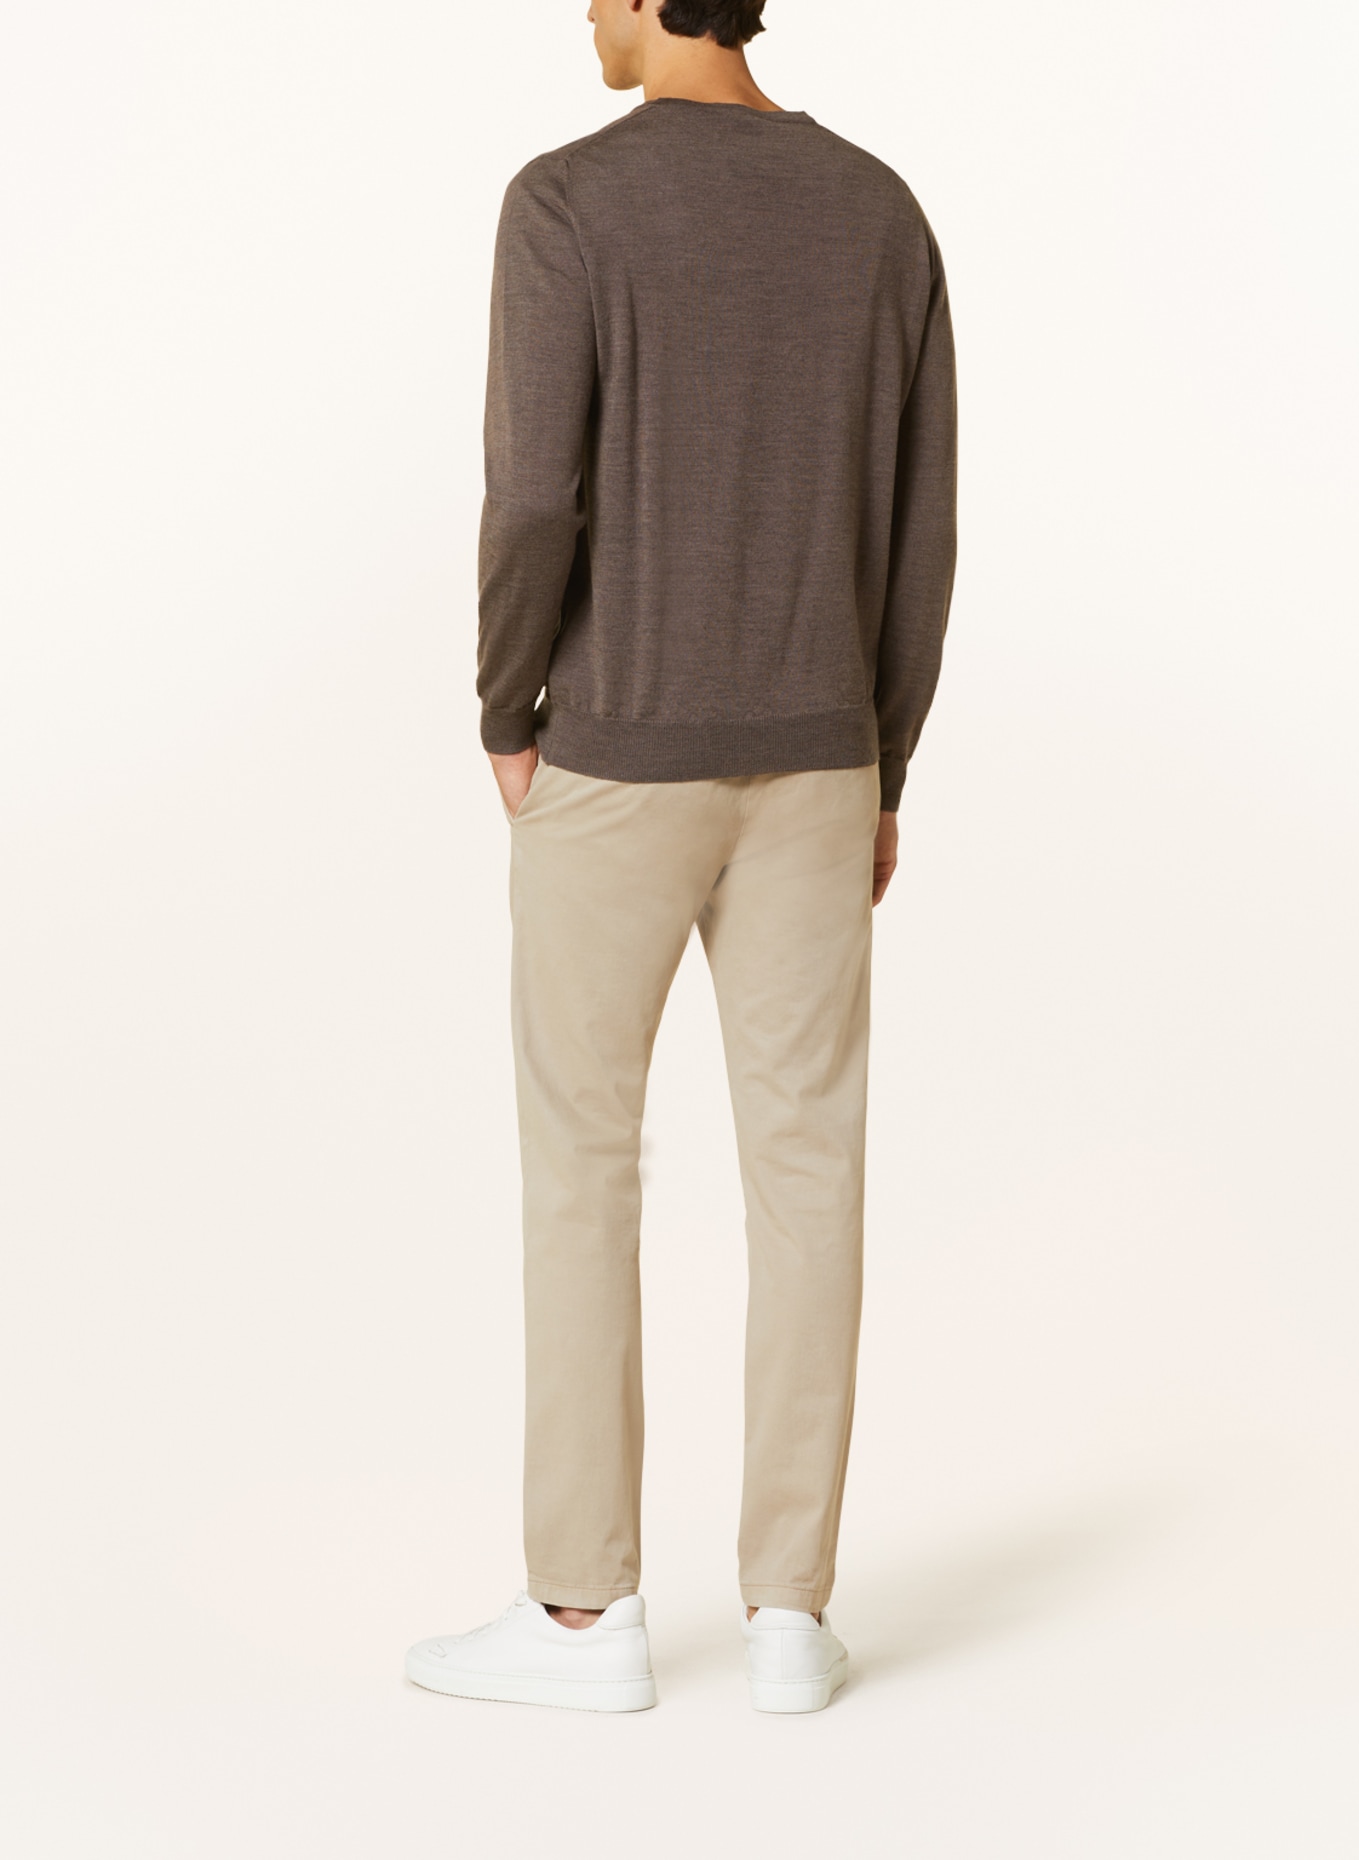 EDUARD DRESSLER Sweater, Color: BROWN (Image 3)